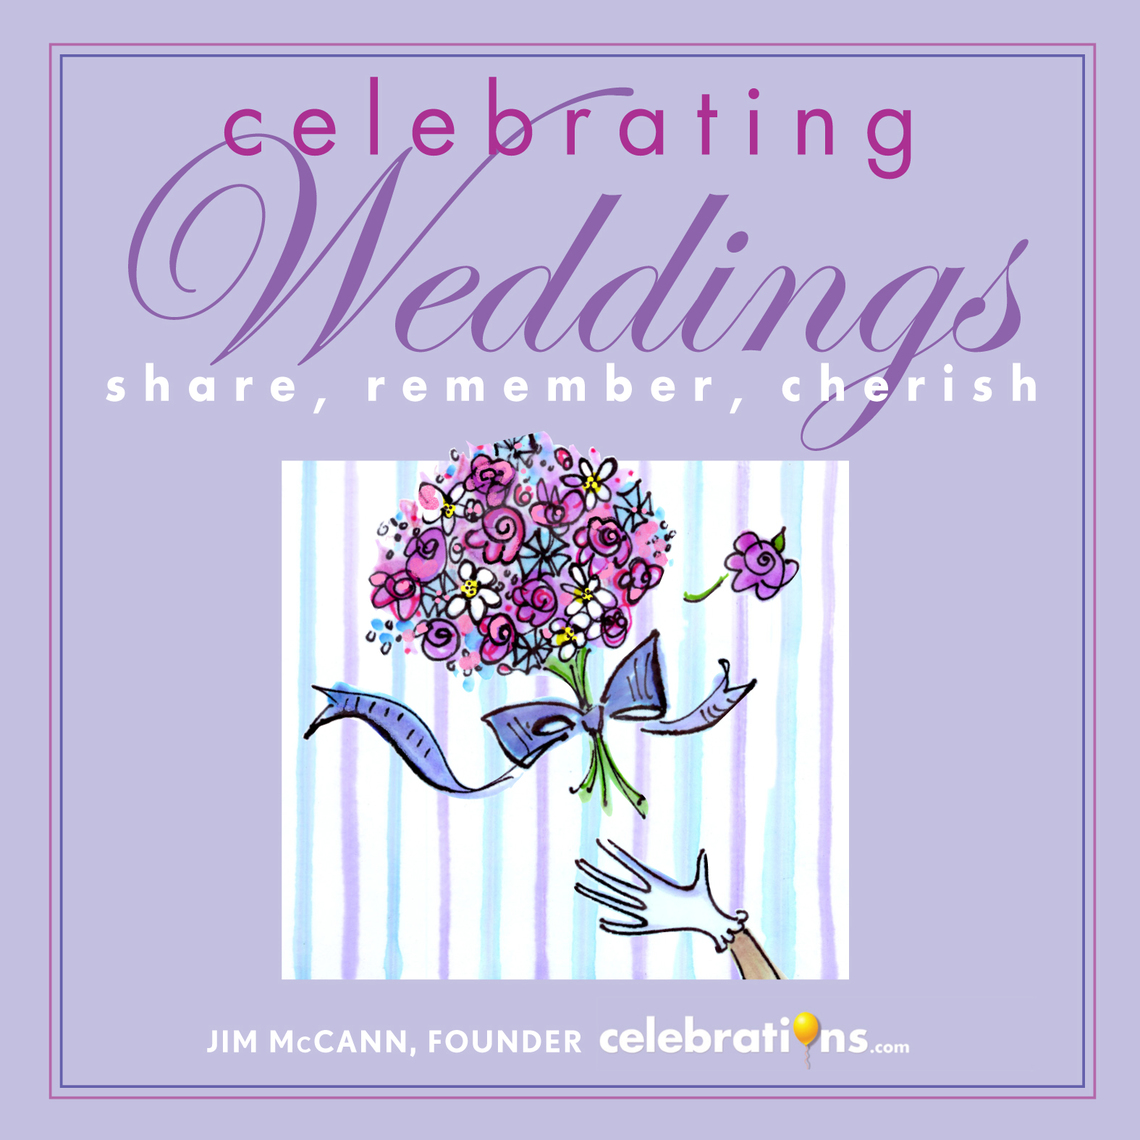 Celebrating Weddings by Jim McCann